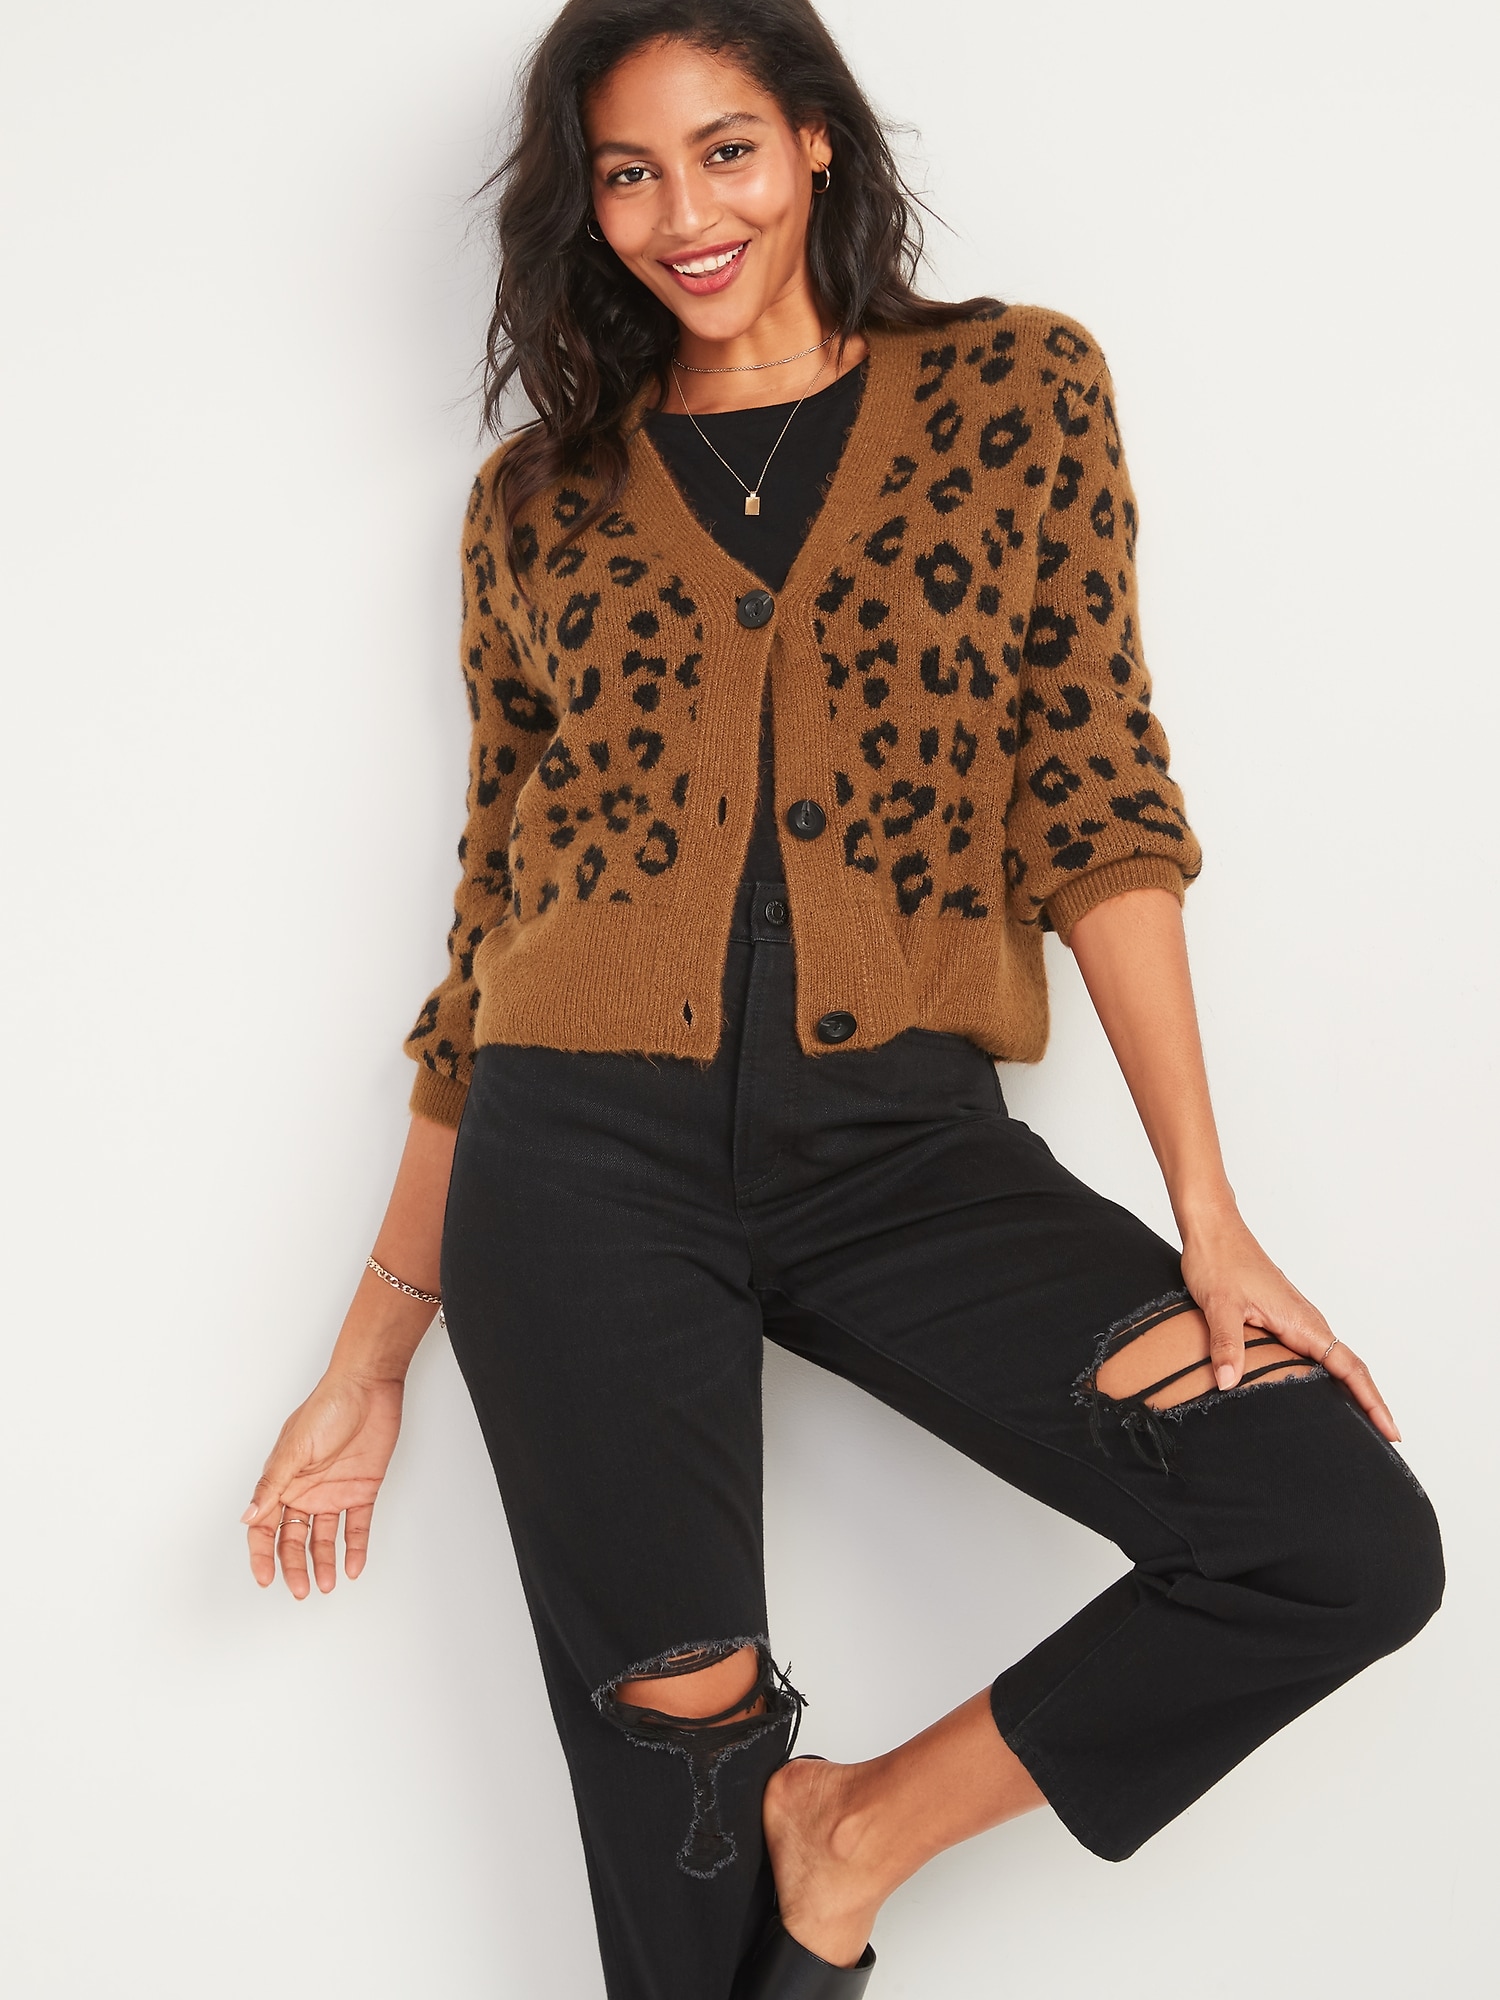 leopard cardigan sweater